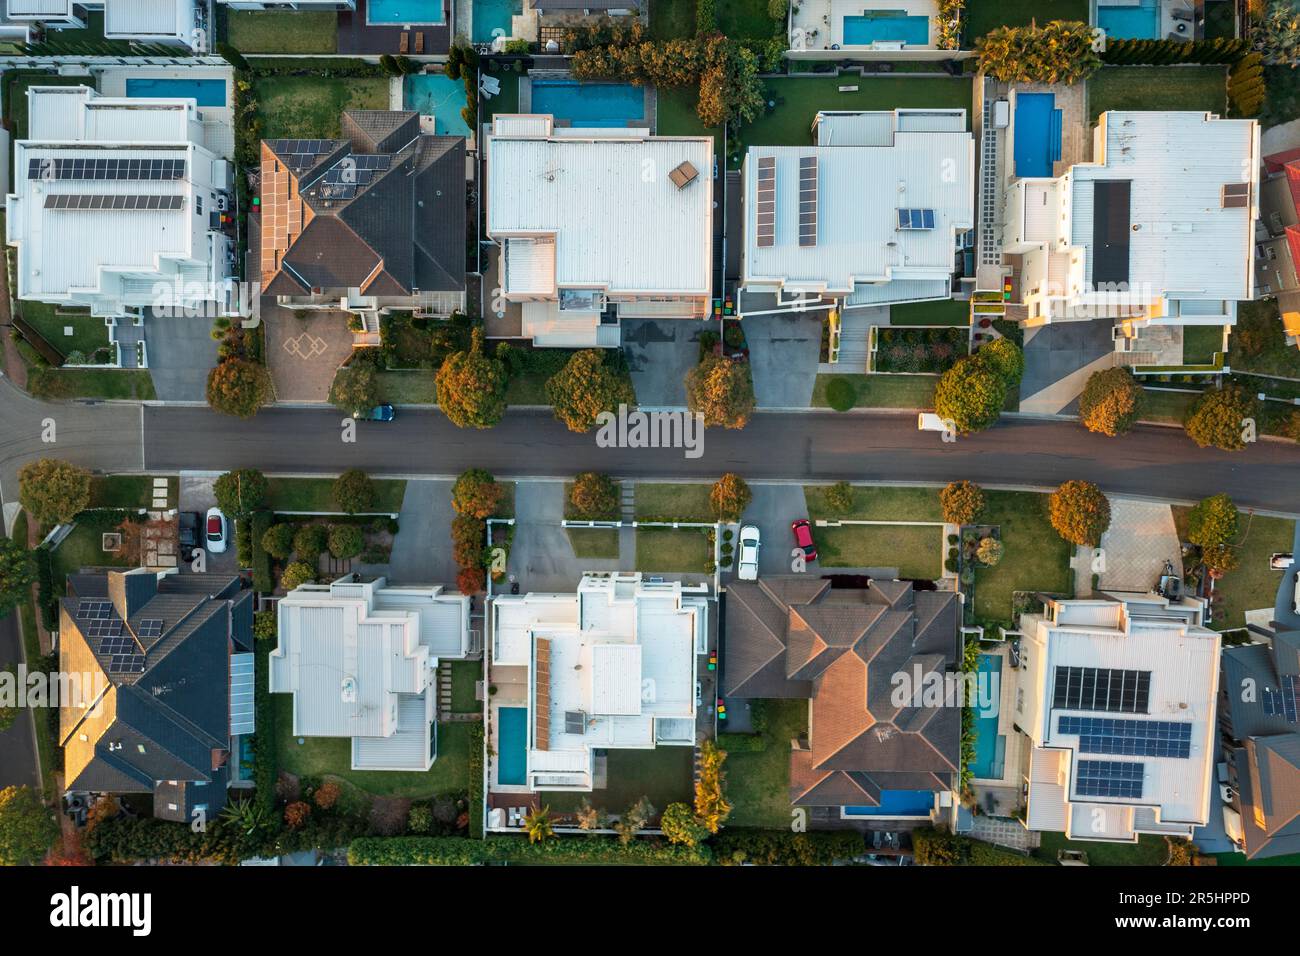 En fin d'après-midi, vue aérienne sur les maisons modernes haut de gamme de la banlieue de Sydney, en Australie Banque D'Images